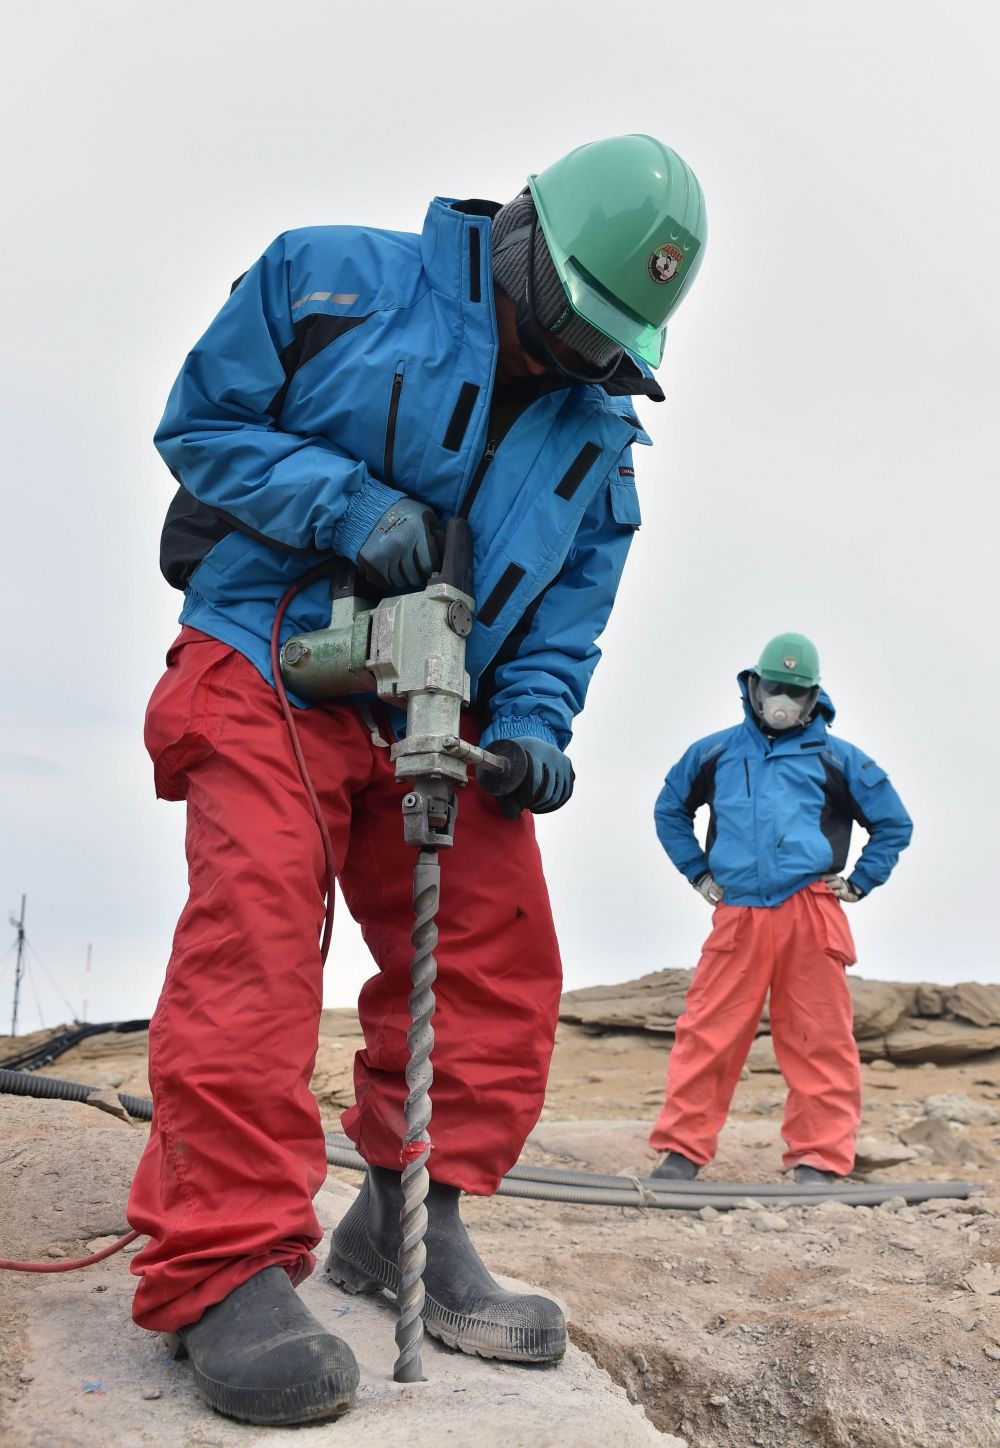 ドリルで岩盤を掘る調理の長谷川隊員（左）と同行者の渡辺さん(2015/12/28)